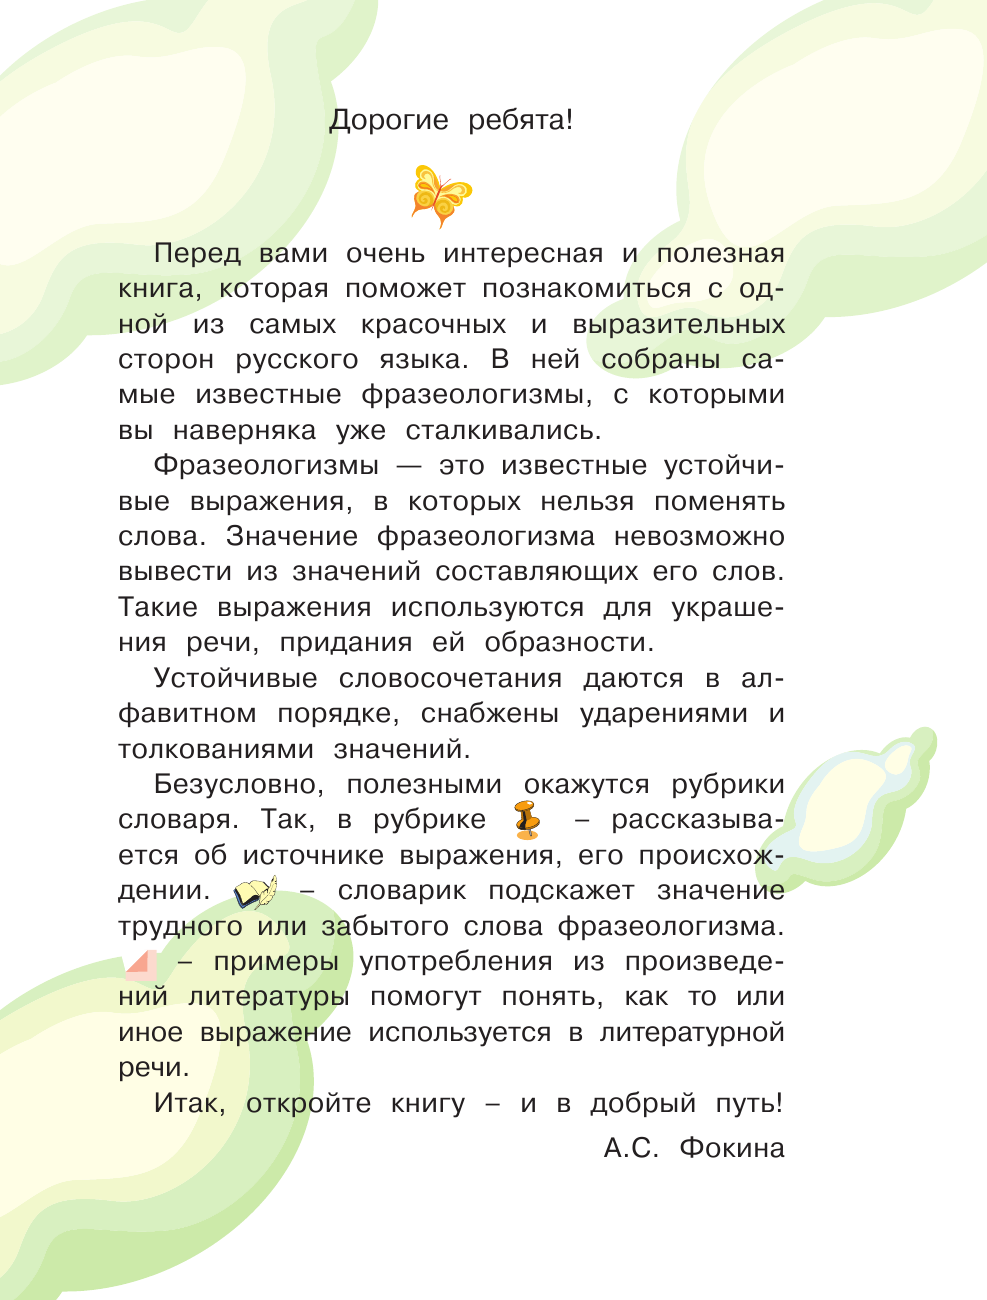 Фокина Анастасия Сергеевна Мой первый фразеологический словарь 1-4 классы - страница 2